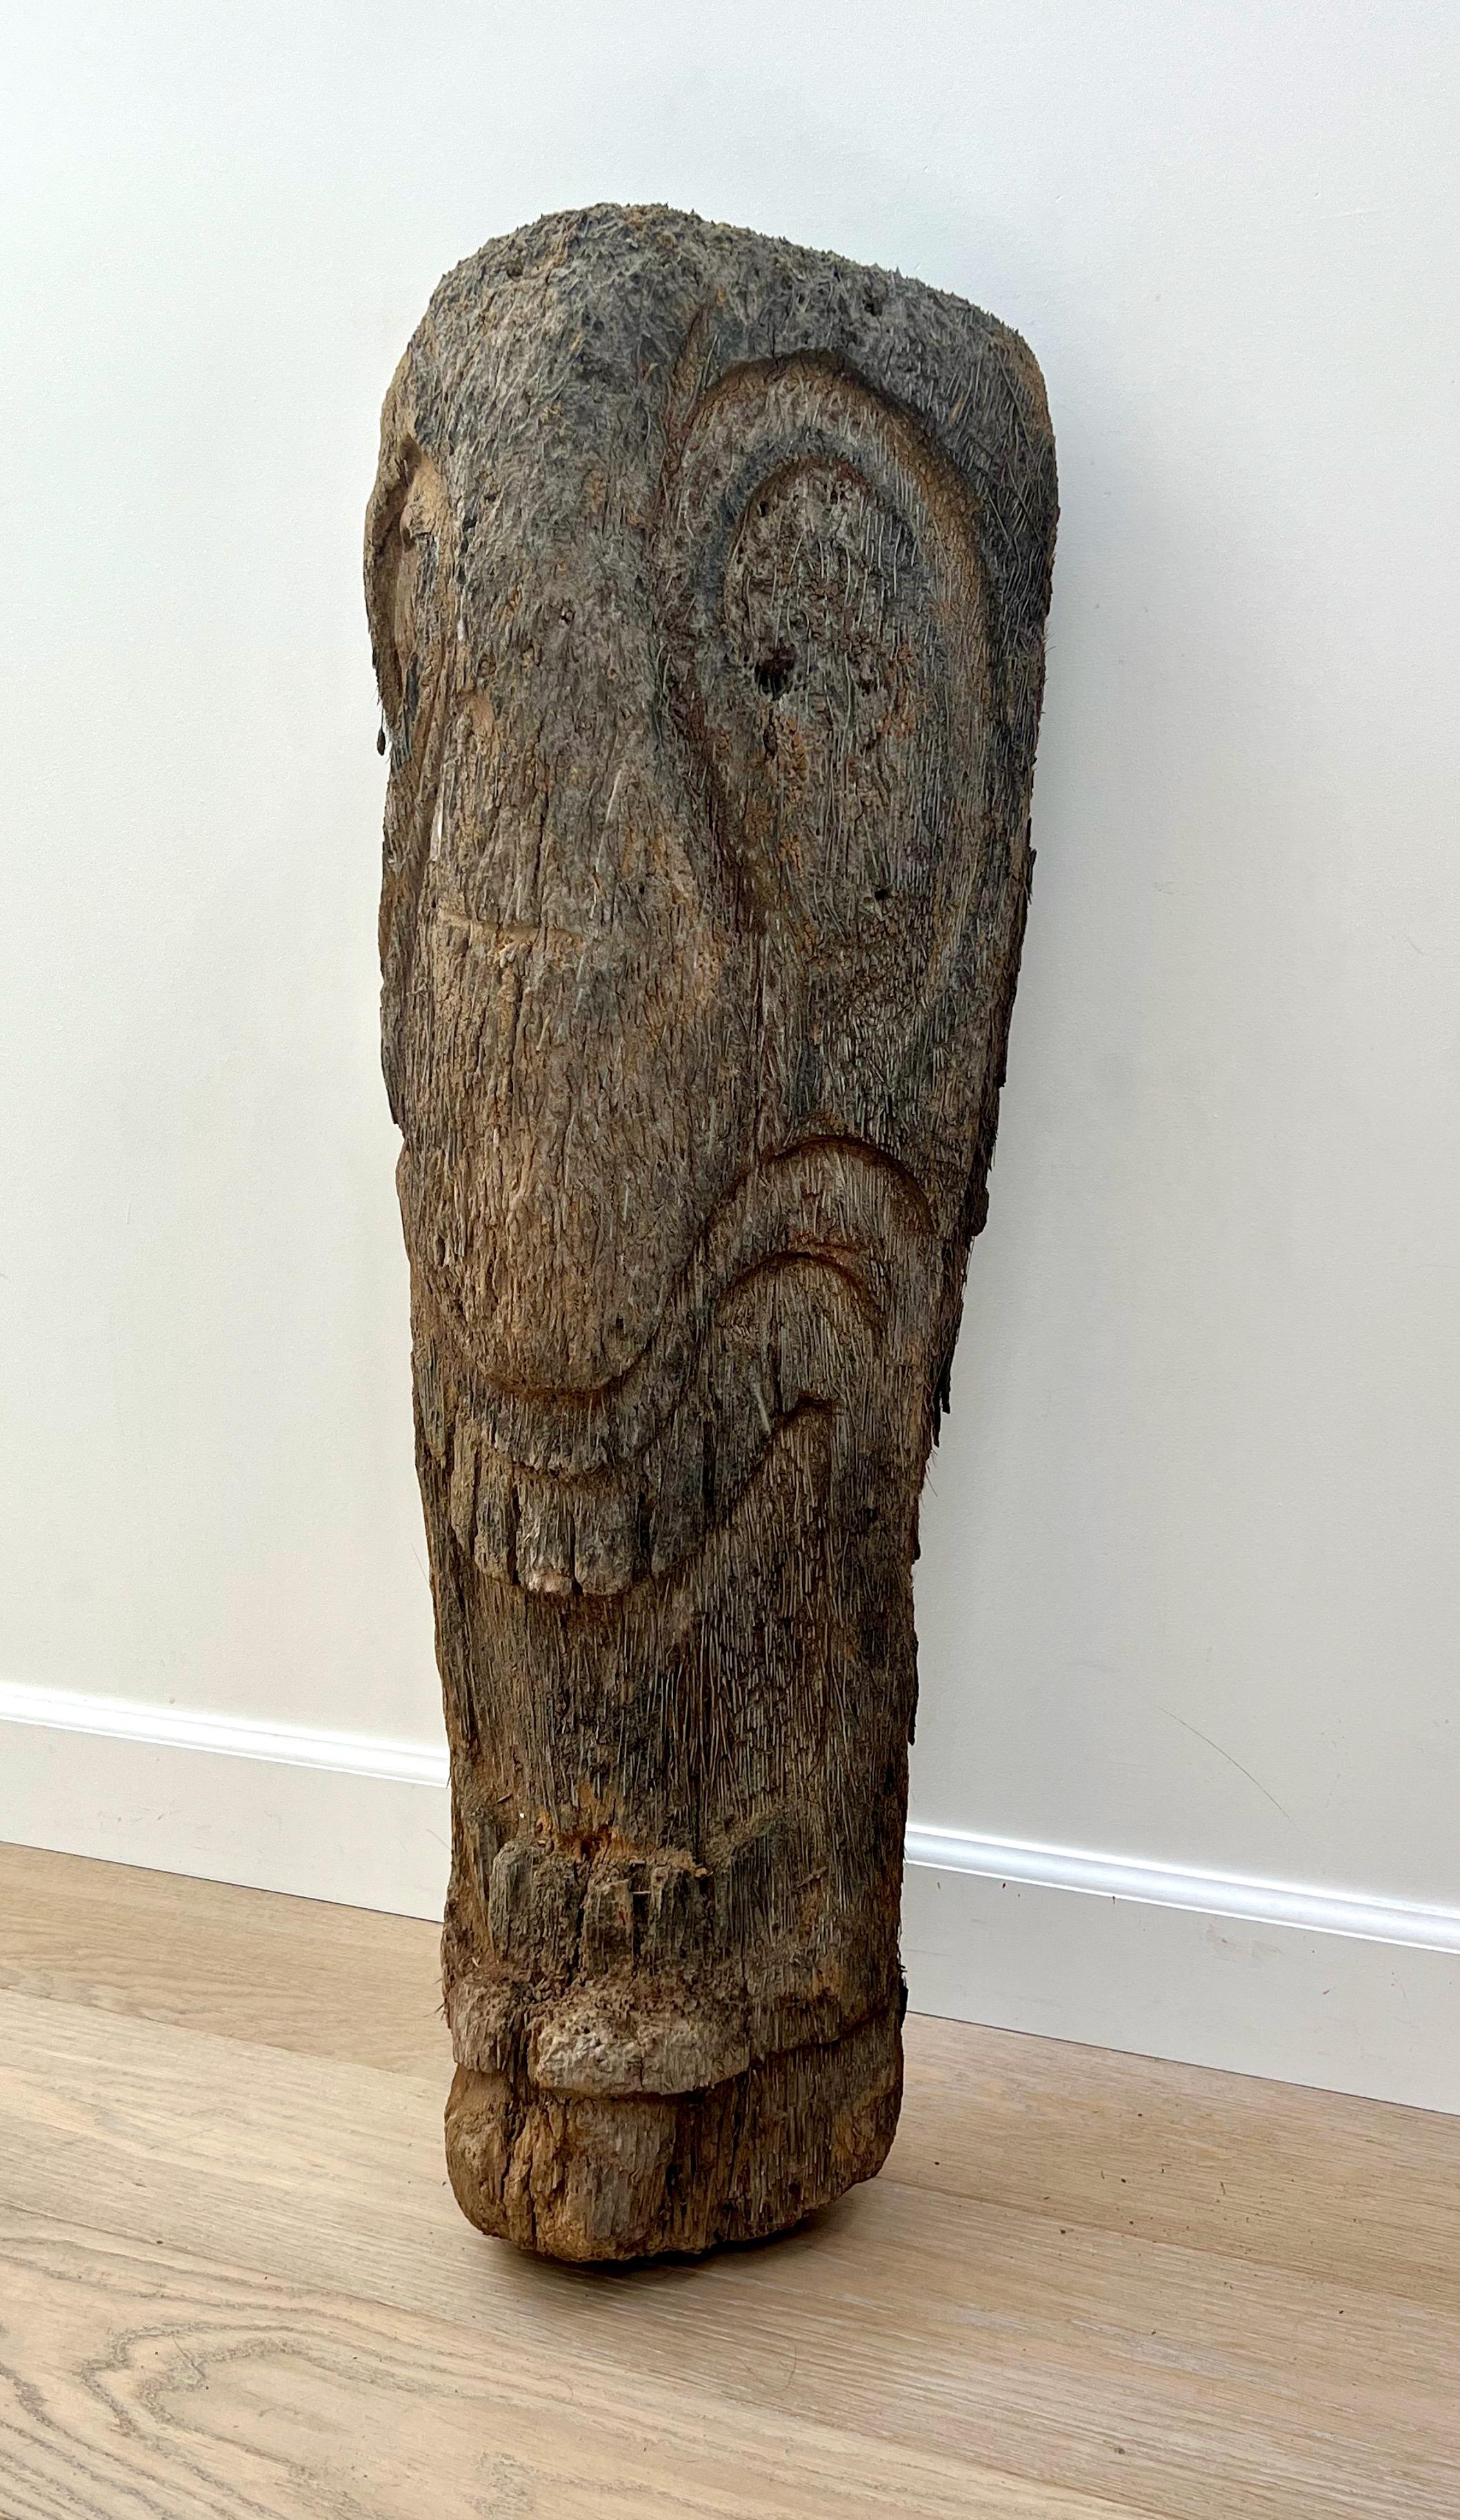 Sculpture de tête de tiki vintage construite en bois de palmier. Une pièce captivante qui dégage un charme tropical intemporel. Puisant ses racines dans la culture Tiki du milieu du XXe siècle, cette pièce est un rappel nostalgique de l'exotisme et